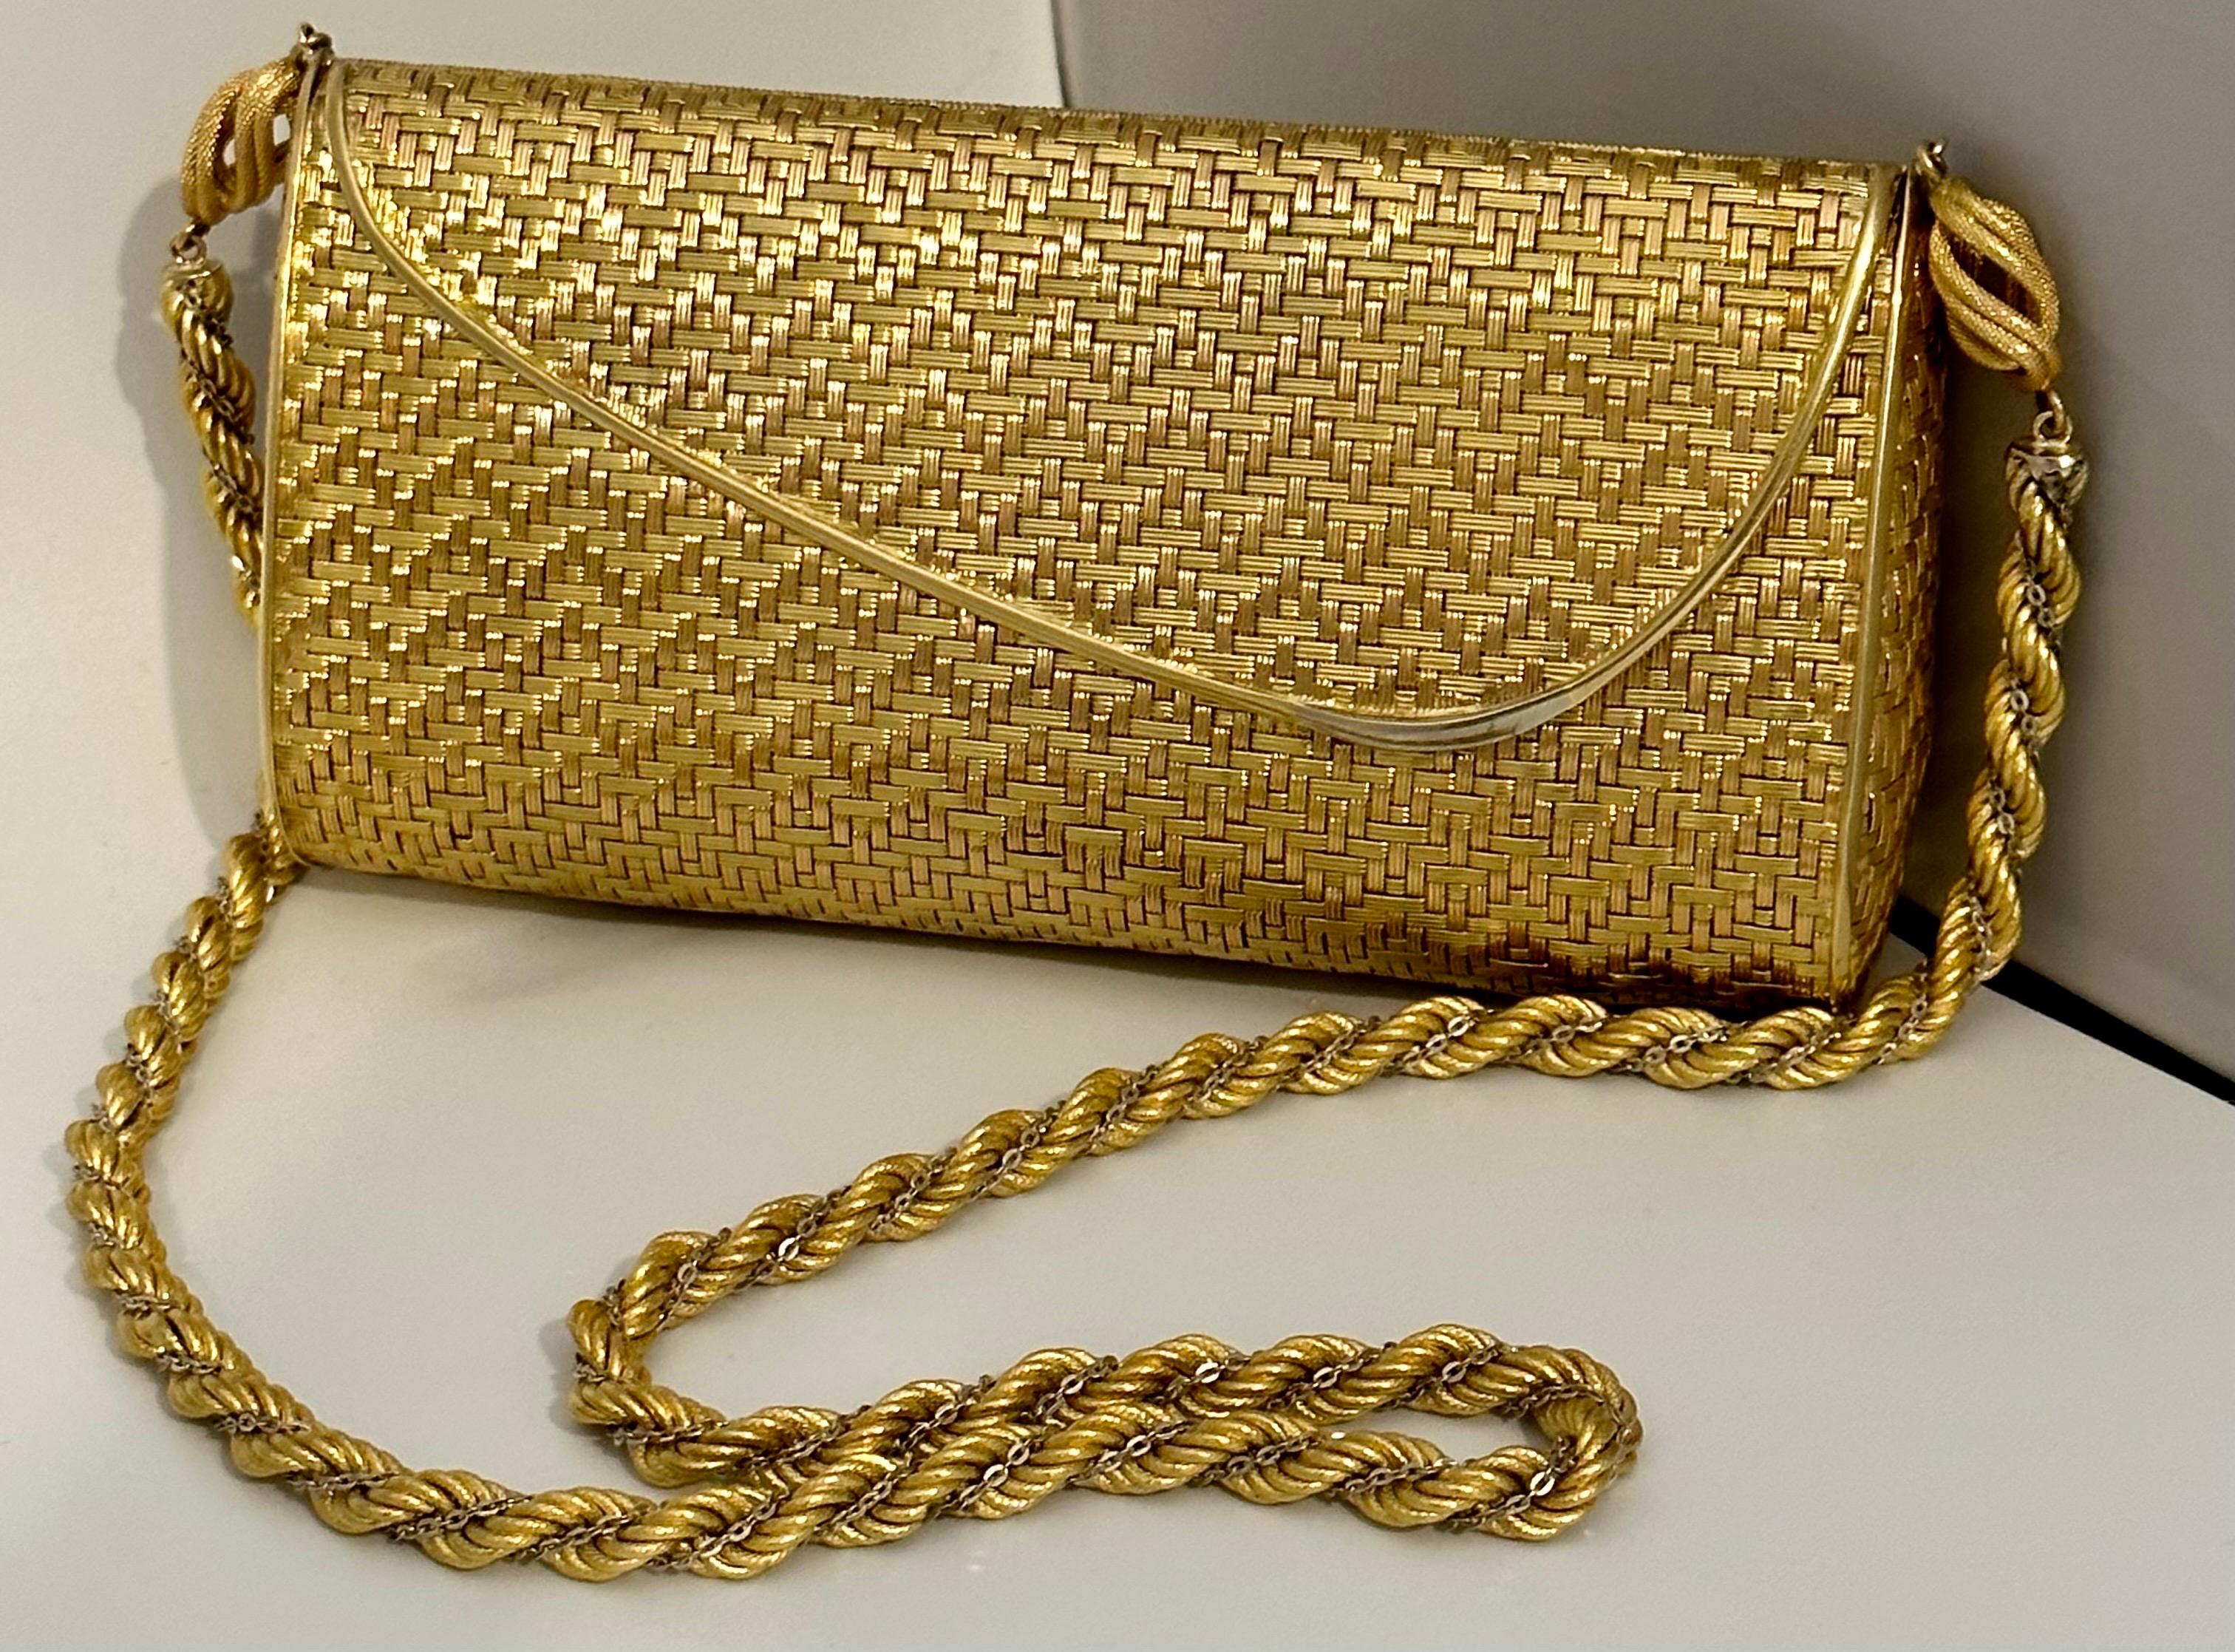 Cartier - Sac à main en maille or jaune 18 carats avec chaîne à l'épaule - Rare - 401 Gm 2